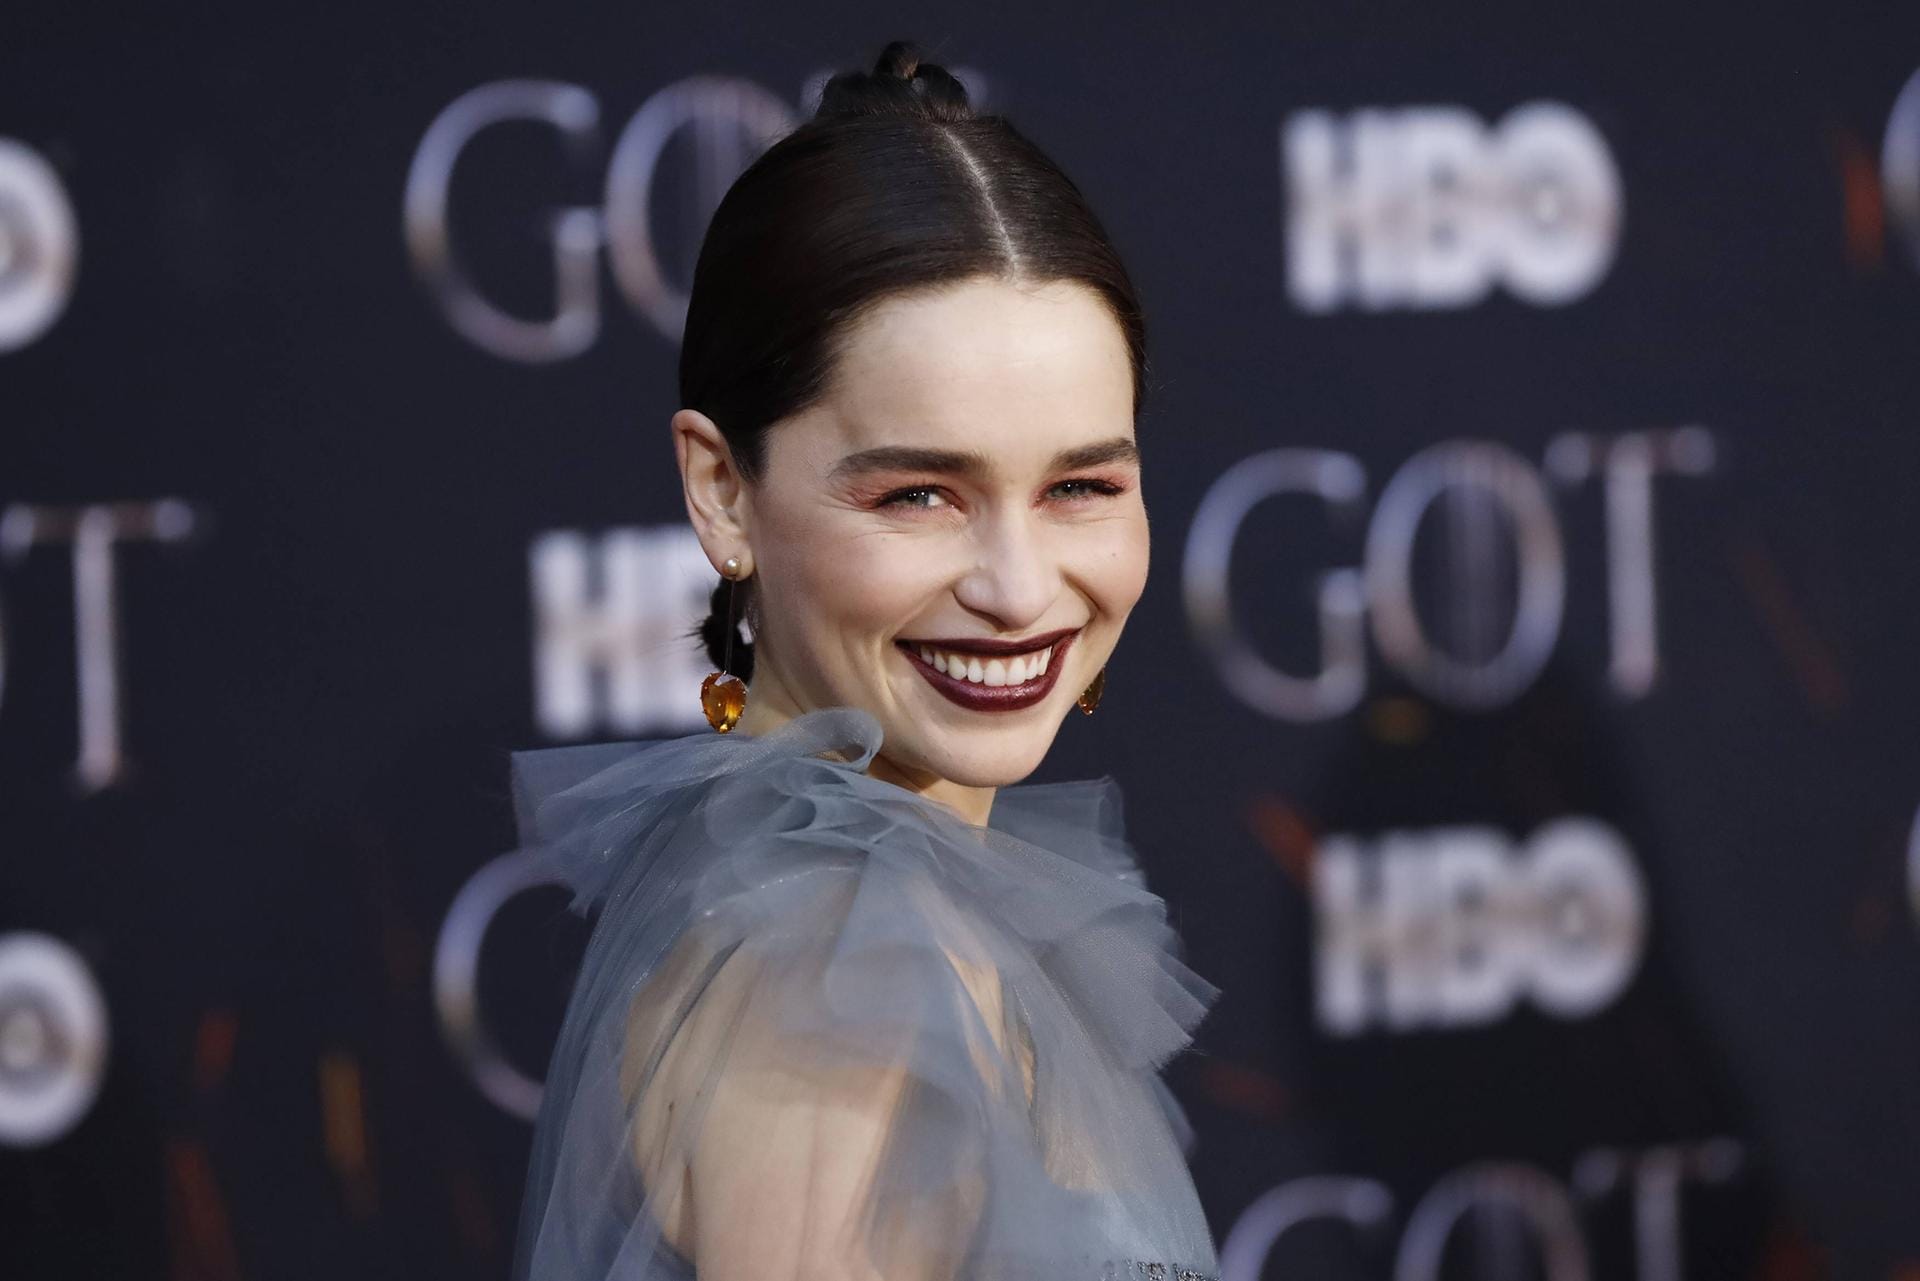 Emilia Clarke 2019: Bei der Premiere zur finalen Staffel von "Game of Thrones" zeigt sich Emilia Clarke mit kurzen Haaren und auch auffälligerem Make-up.